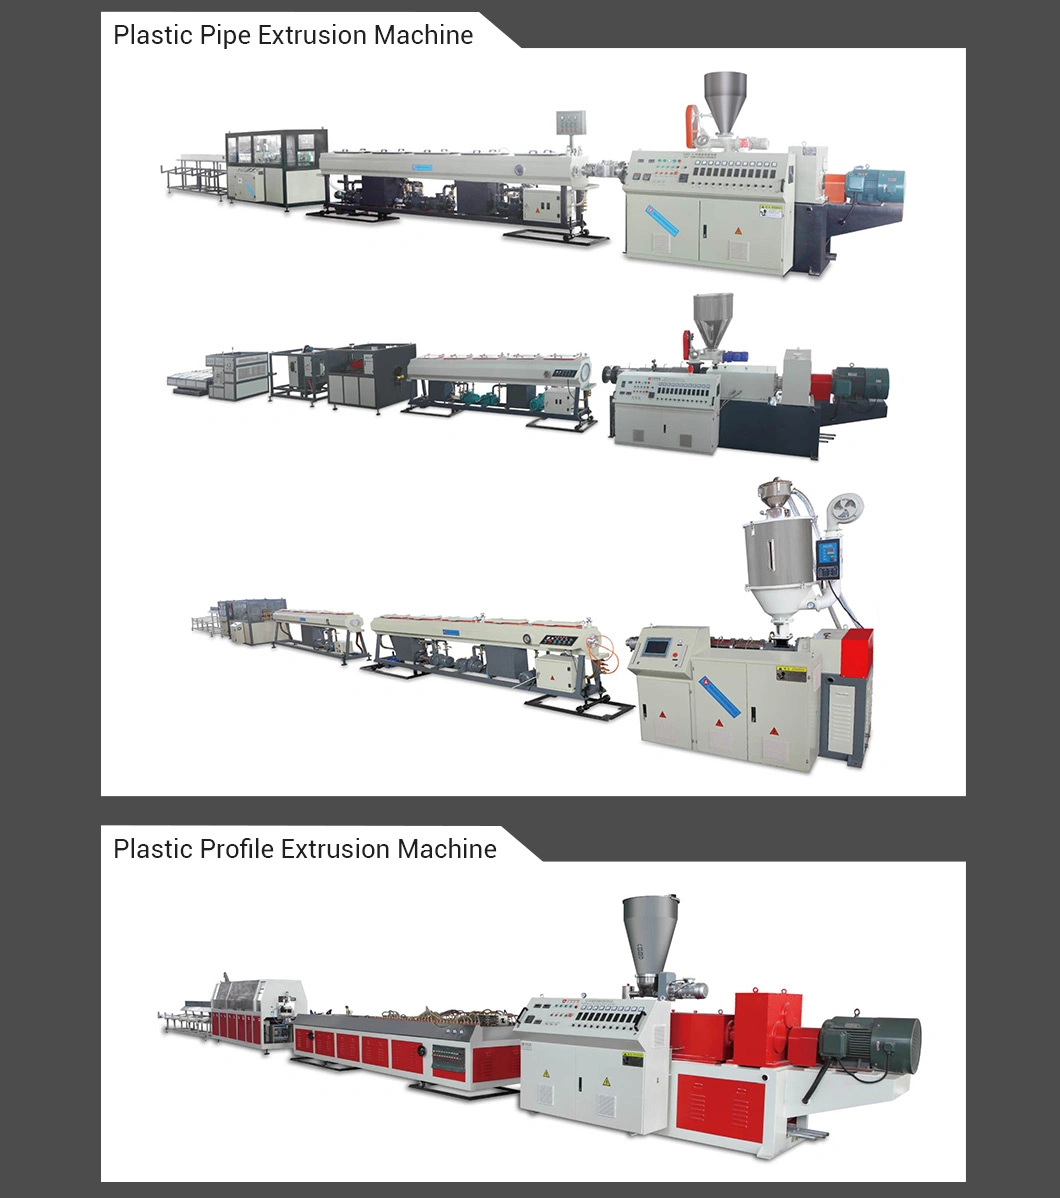 Yatong PE Film Crushing Washing Machine / Washing Line / Recycling Production Line